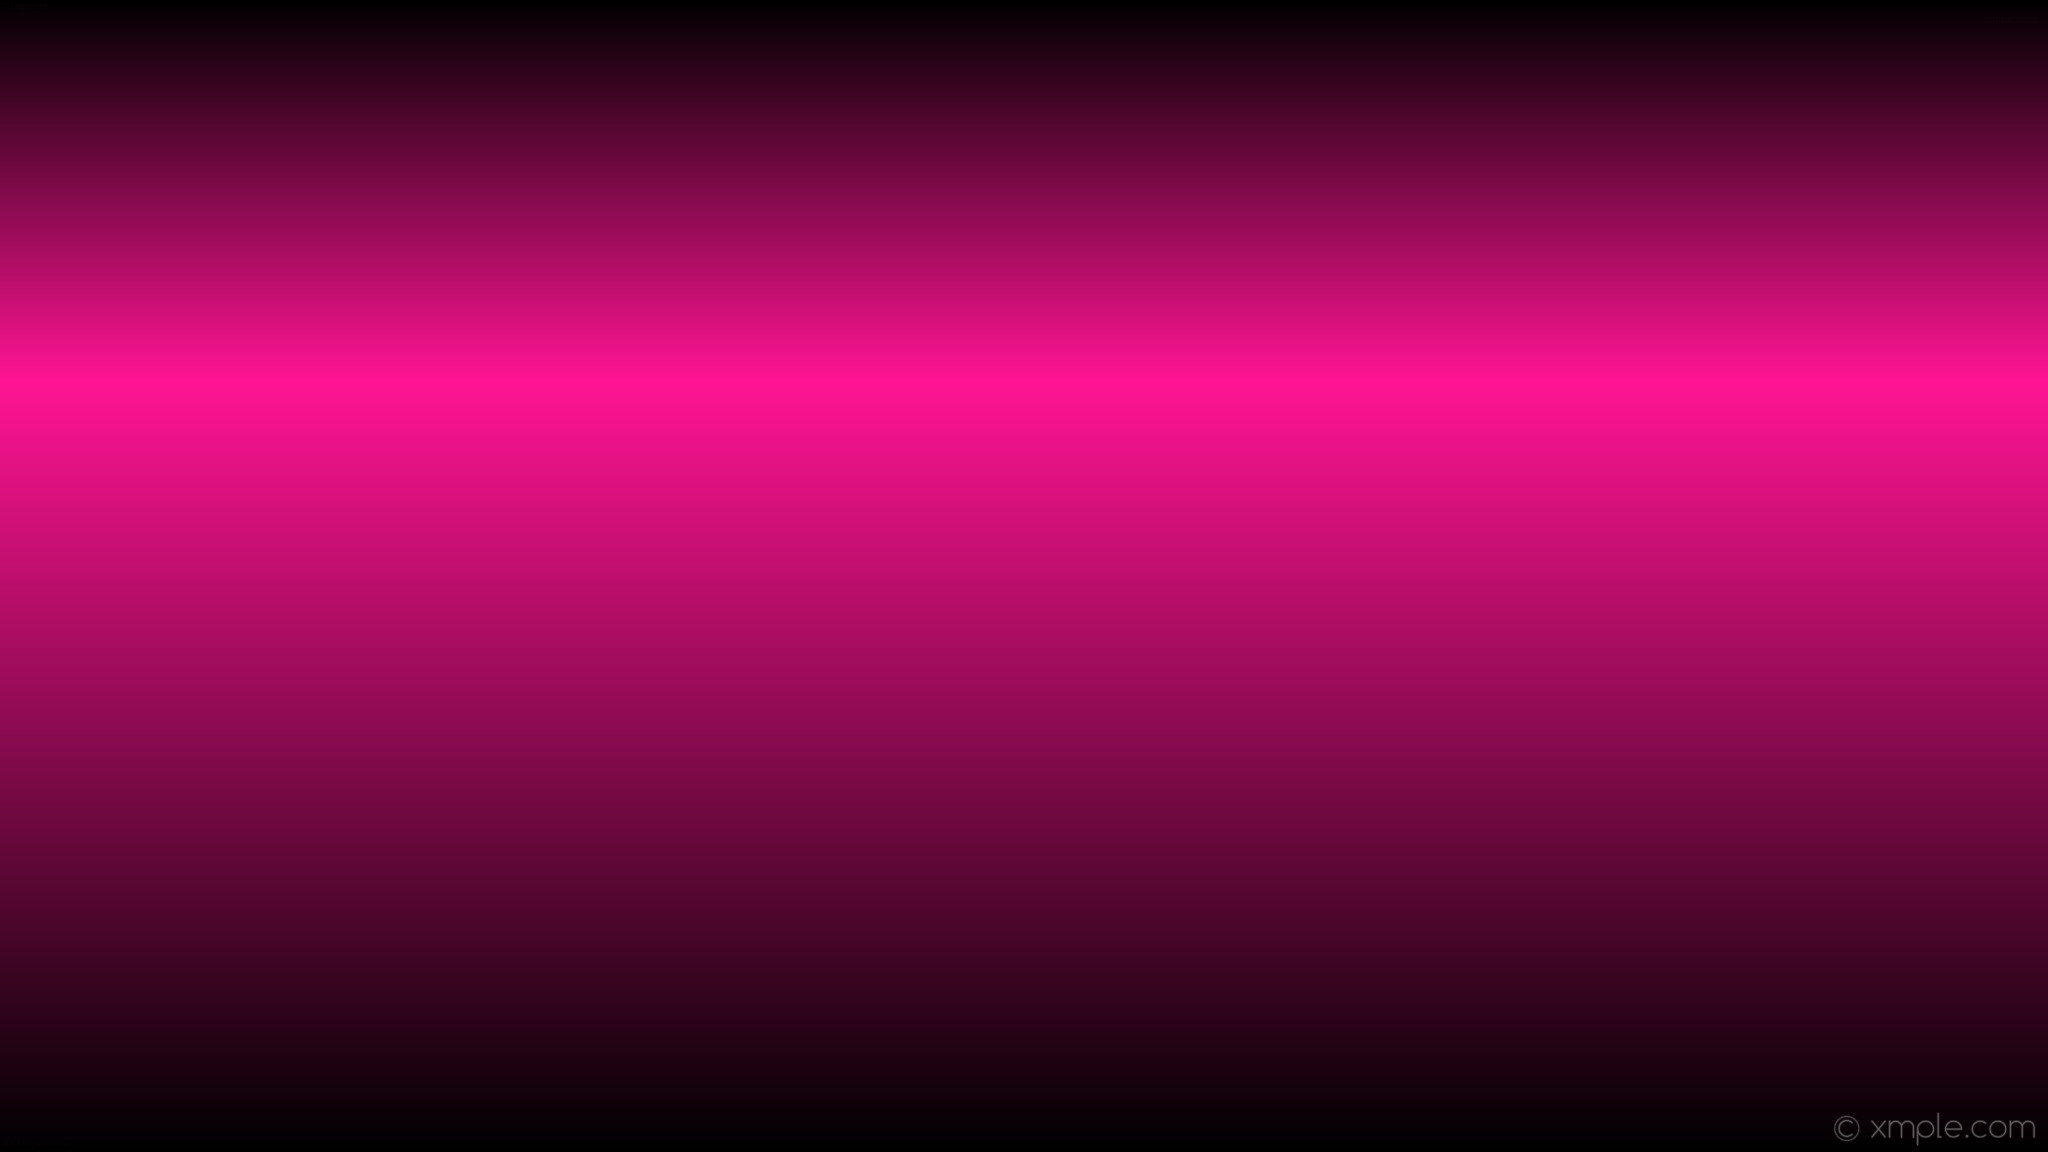 2048x1152 wallpaper pink black linear gradient highlight deep pink #000000 #ff1493  270Â° 67%